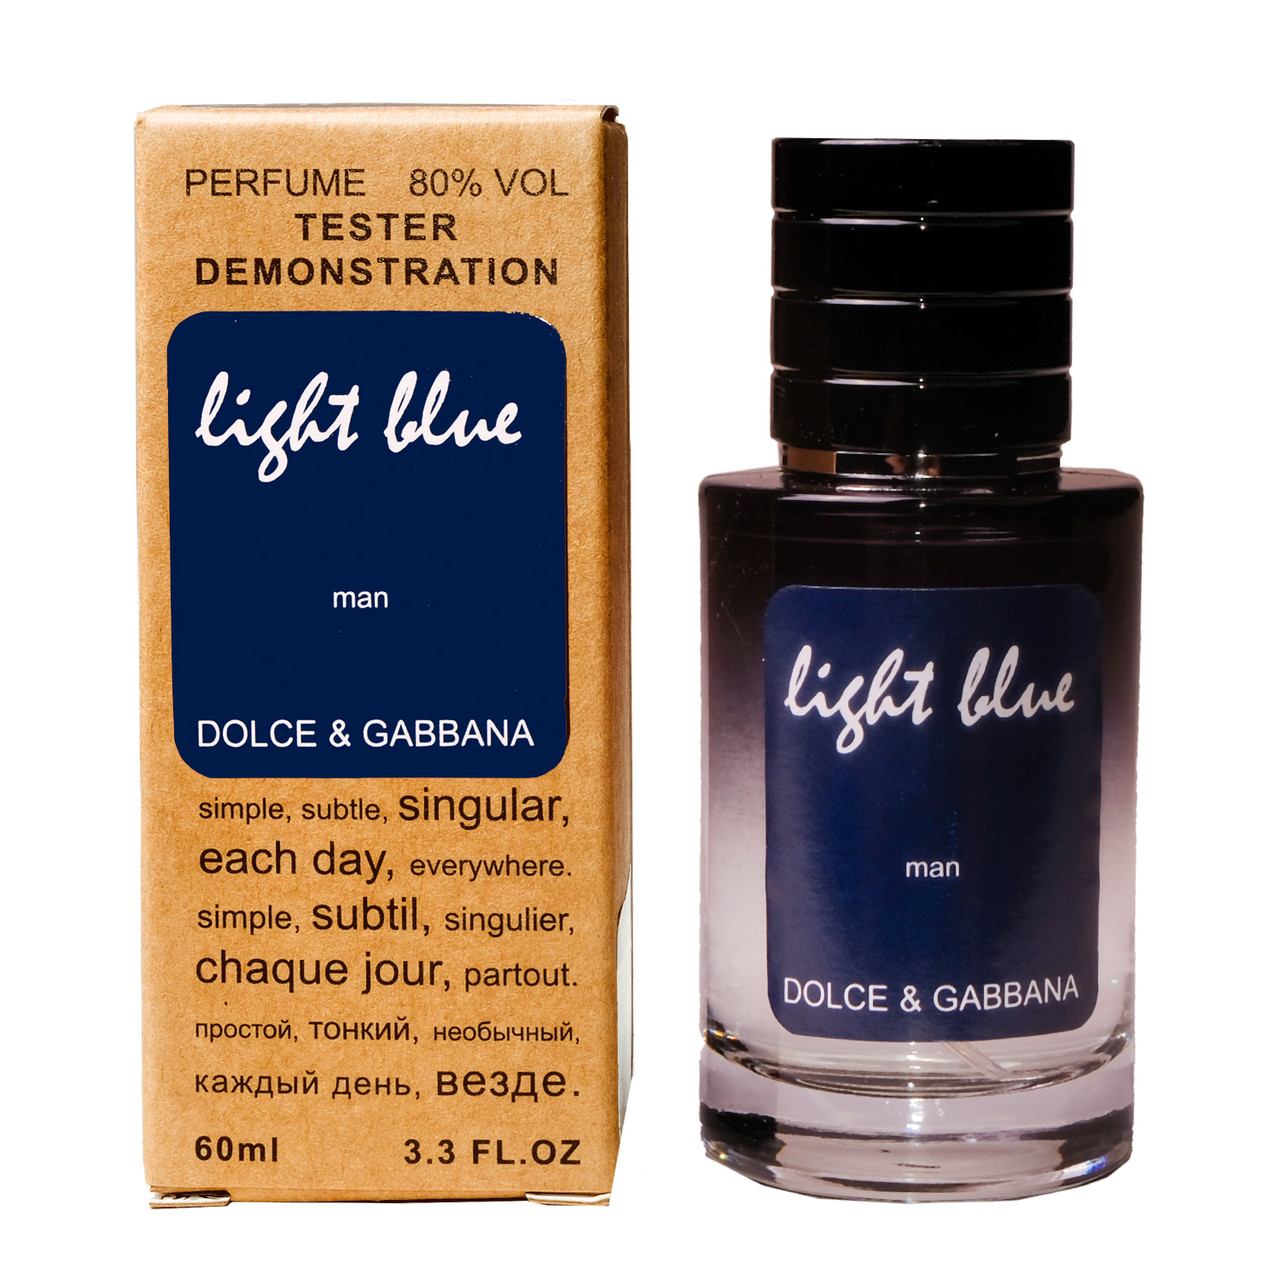 Dolce & Gabbana Light Blue TESTER LUX, 60 мл